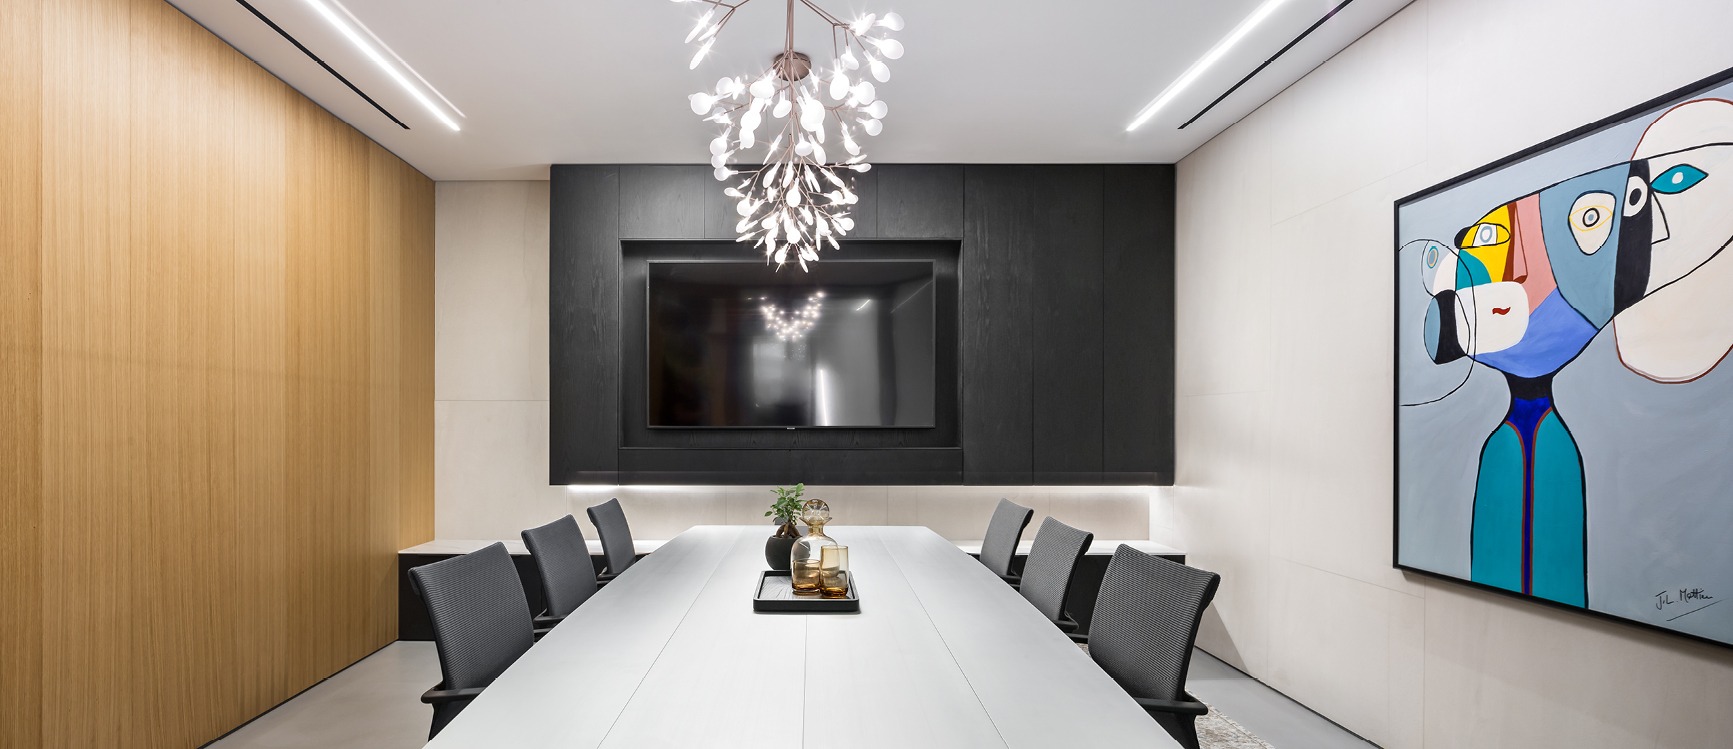 חדר ישיבות במשרד מעוצב חיפוי עץ שחור חום בהתאמה אישית